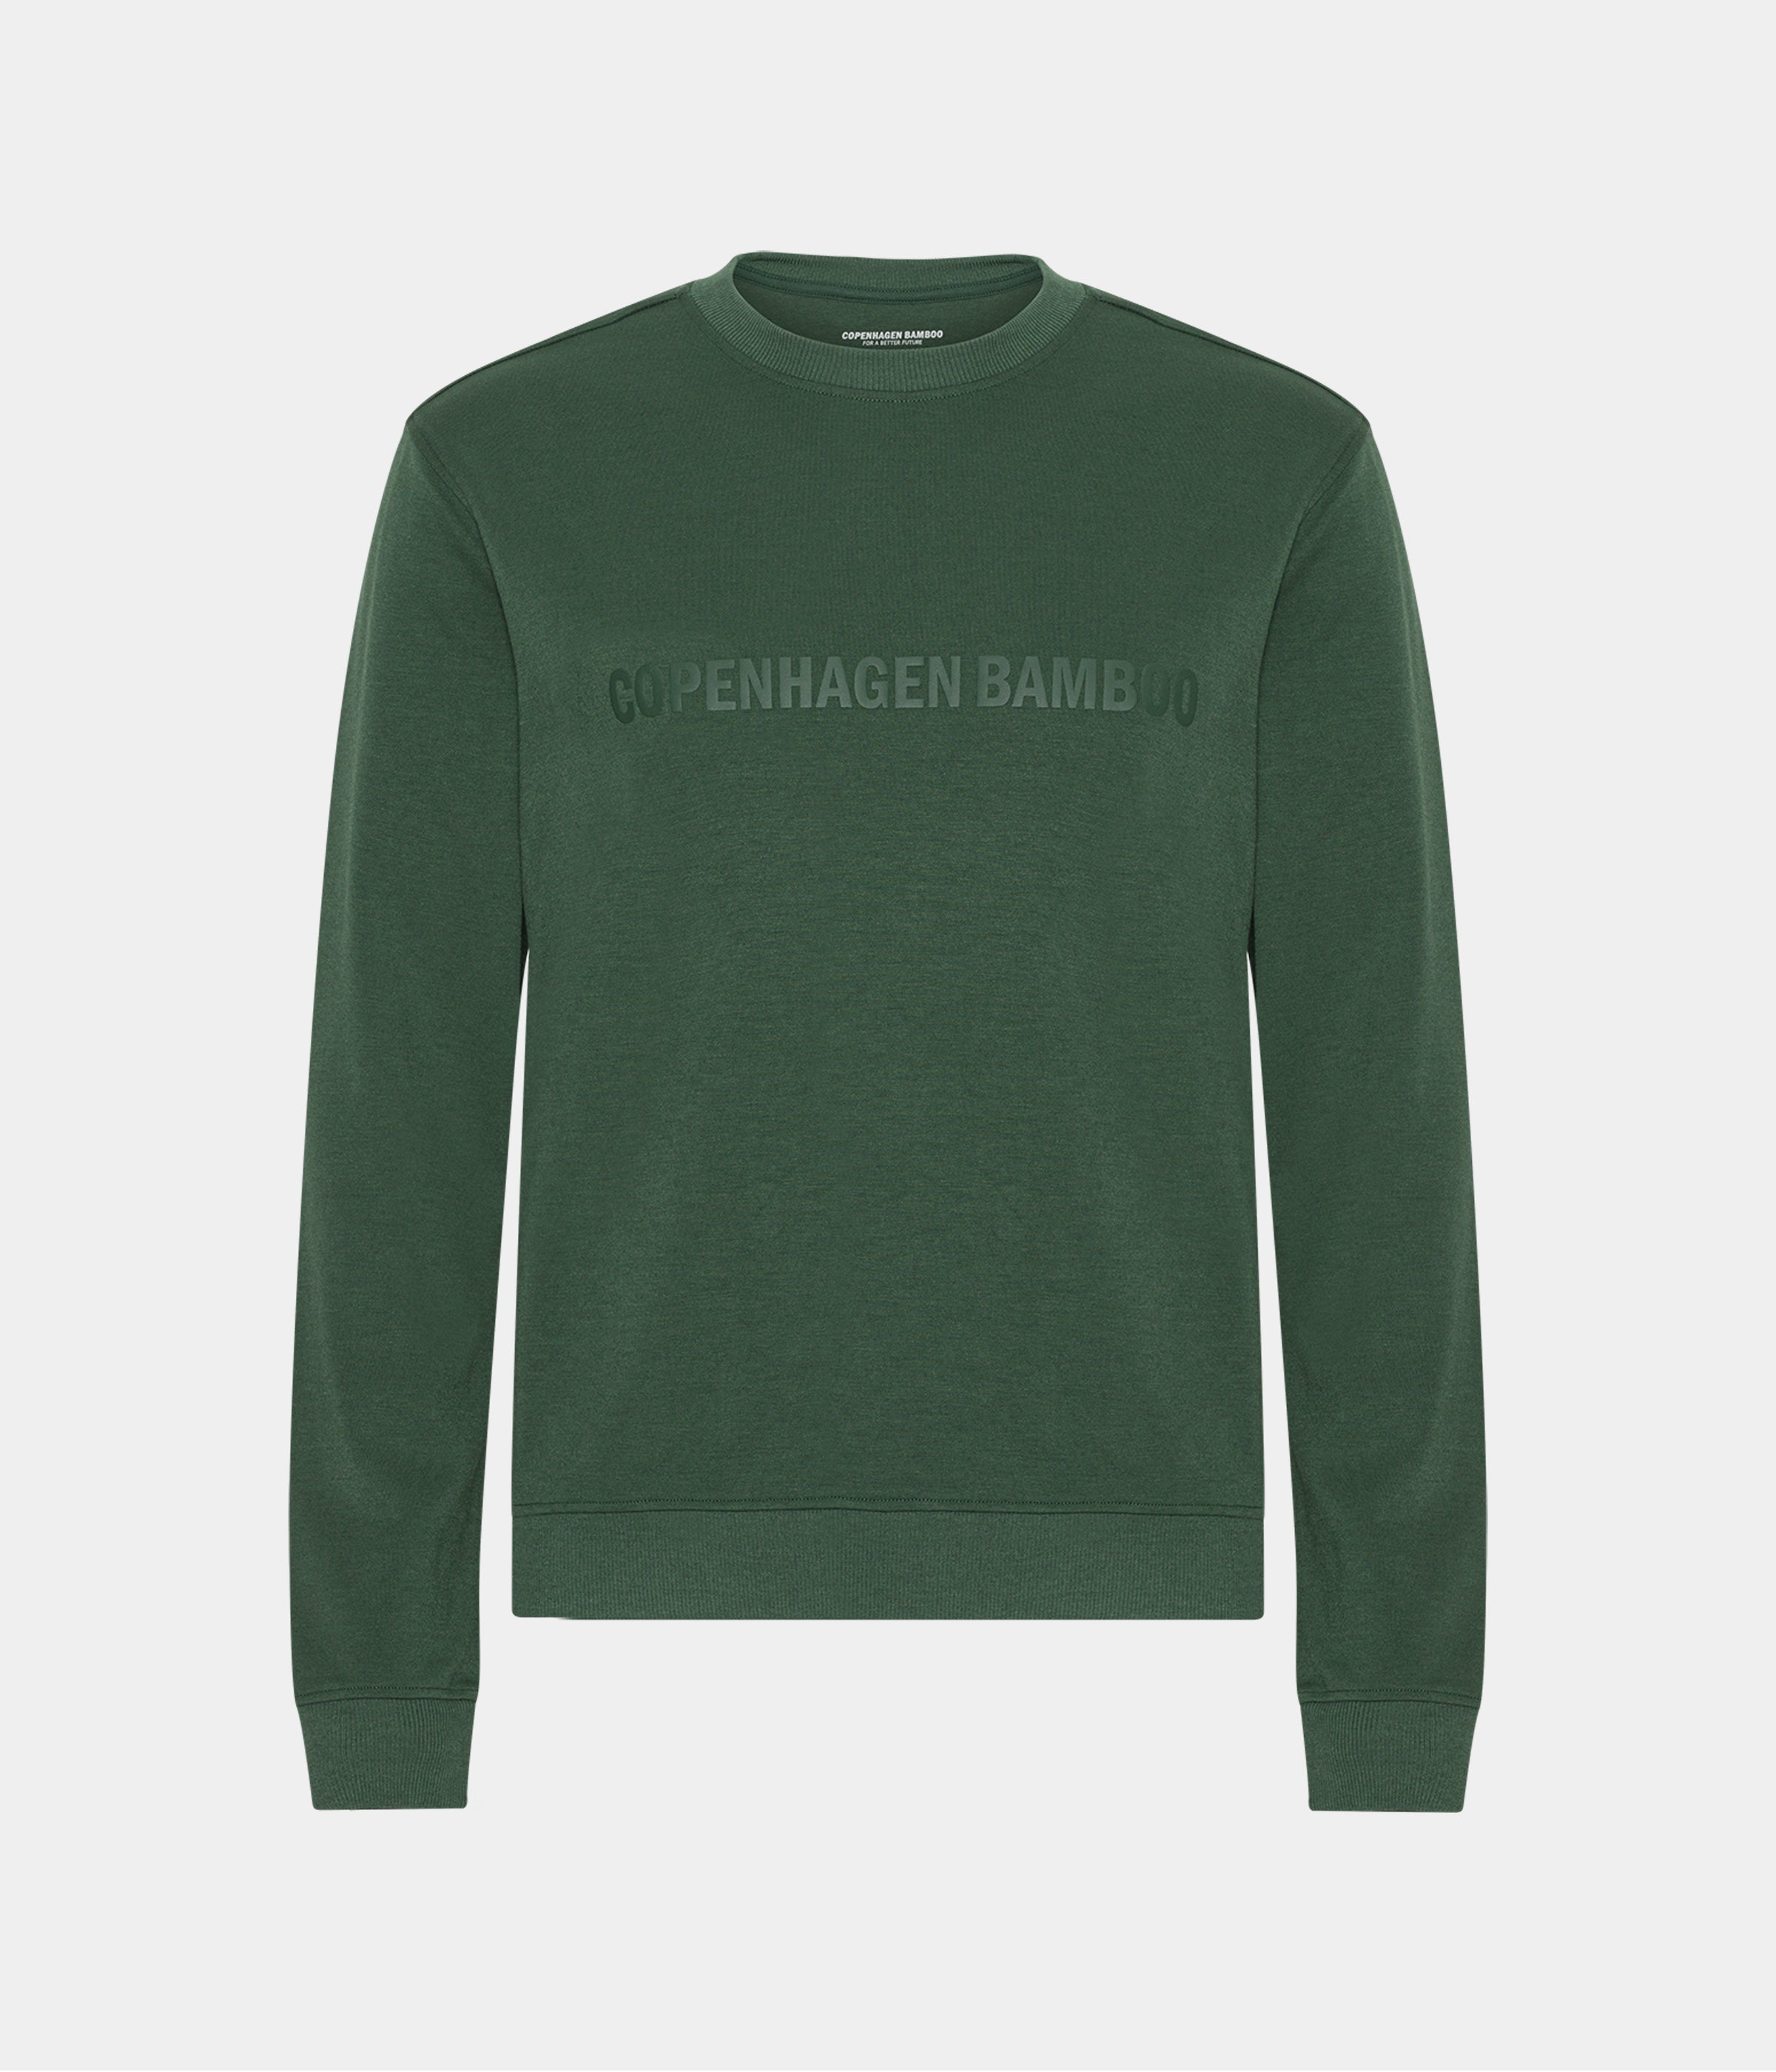 Billede af Grøn bambus sweatshirt til mænd med logo fra Copenhagen Bamboo, M hos Copenhagen Bamboo